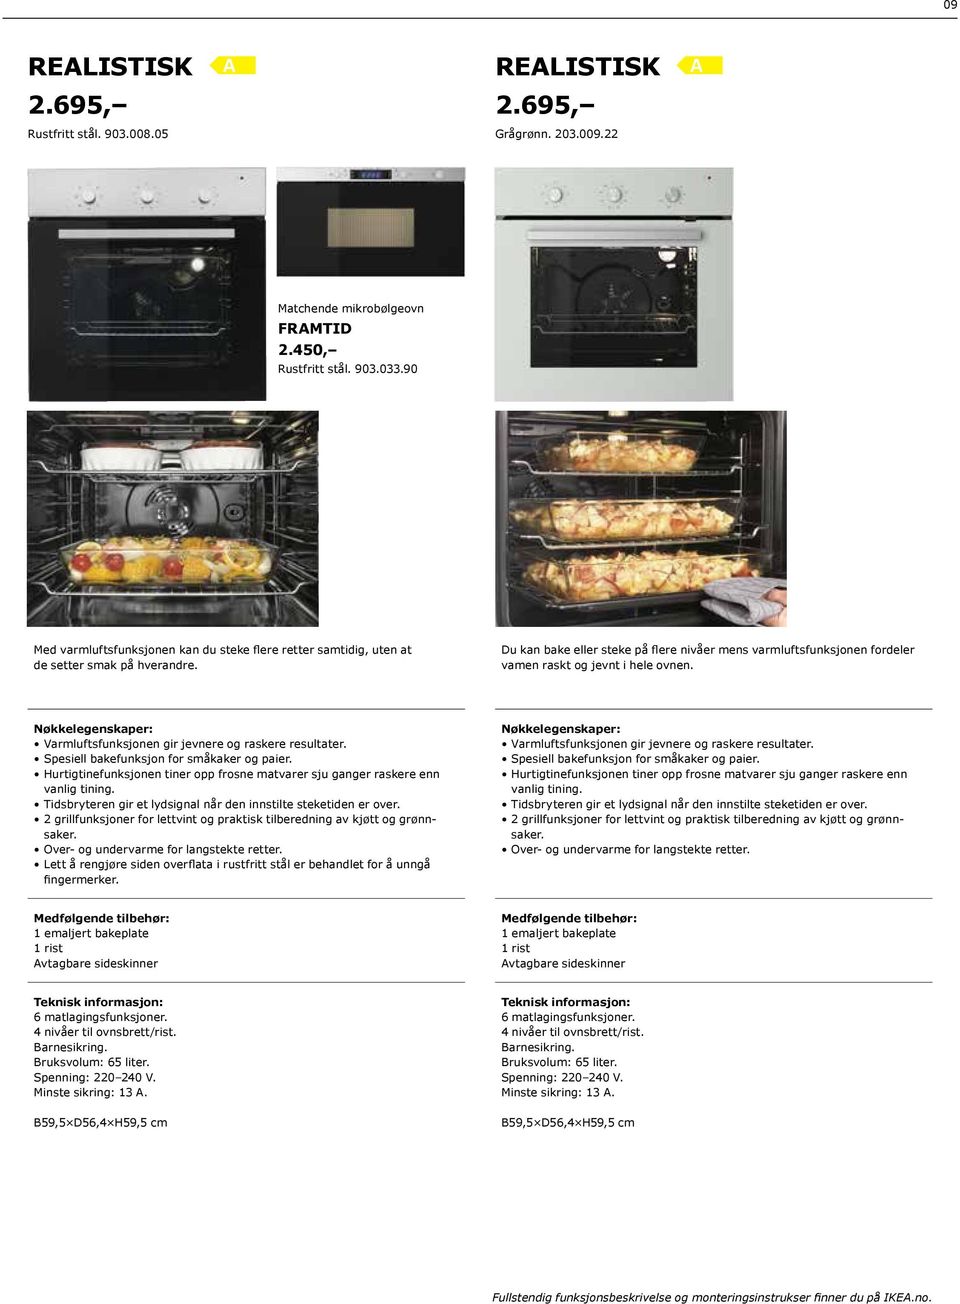 Kjøpehjelp. Hvitevarer. Bli inspirert på IKEA.no - PDF Gratis nedlasting